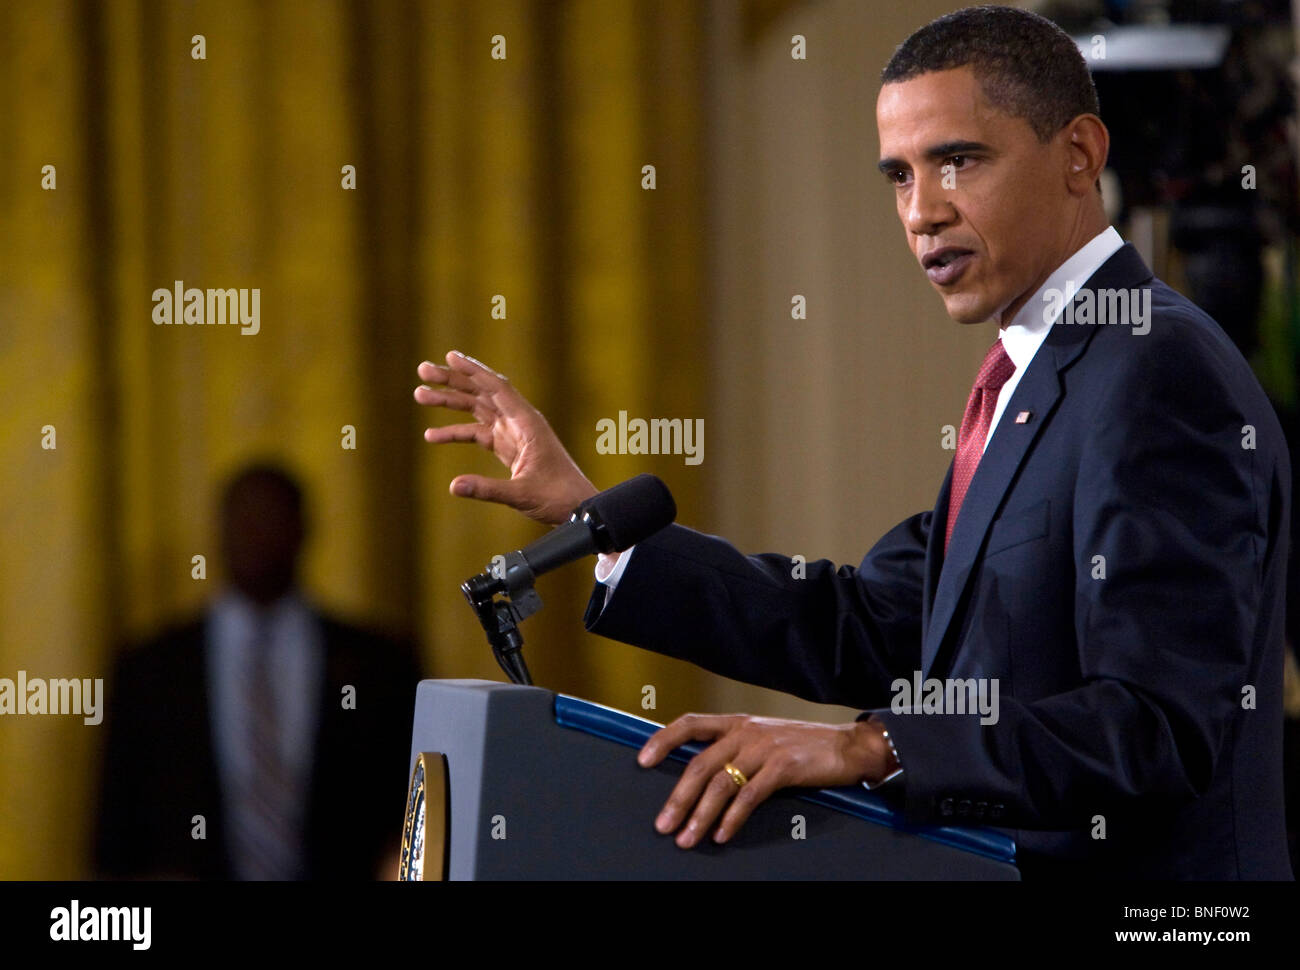 Le président Barack Obama d'accepter des questions lors d'un premier temps Conférence de presse à la Maison Blanche. Banque D'Images